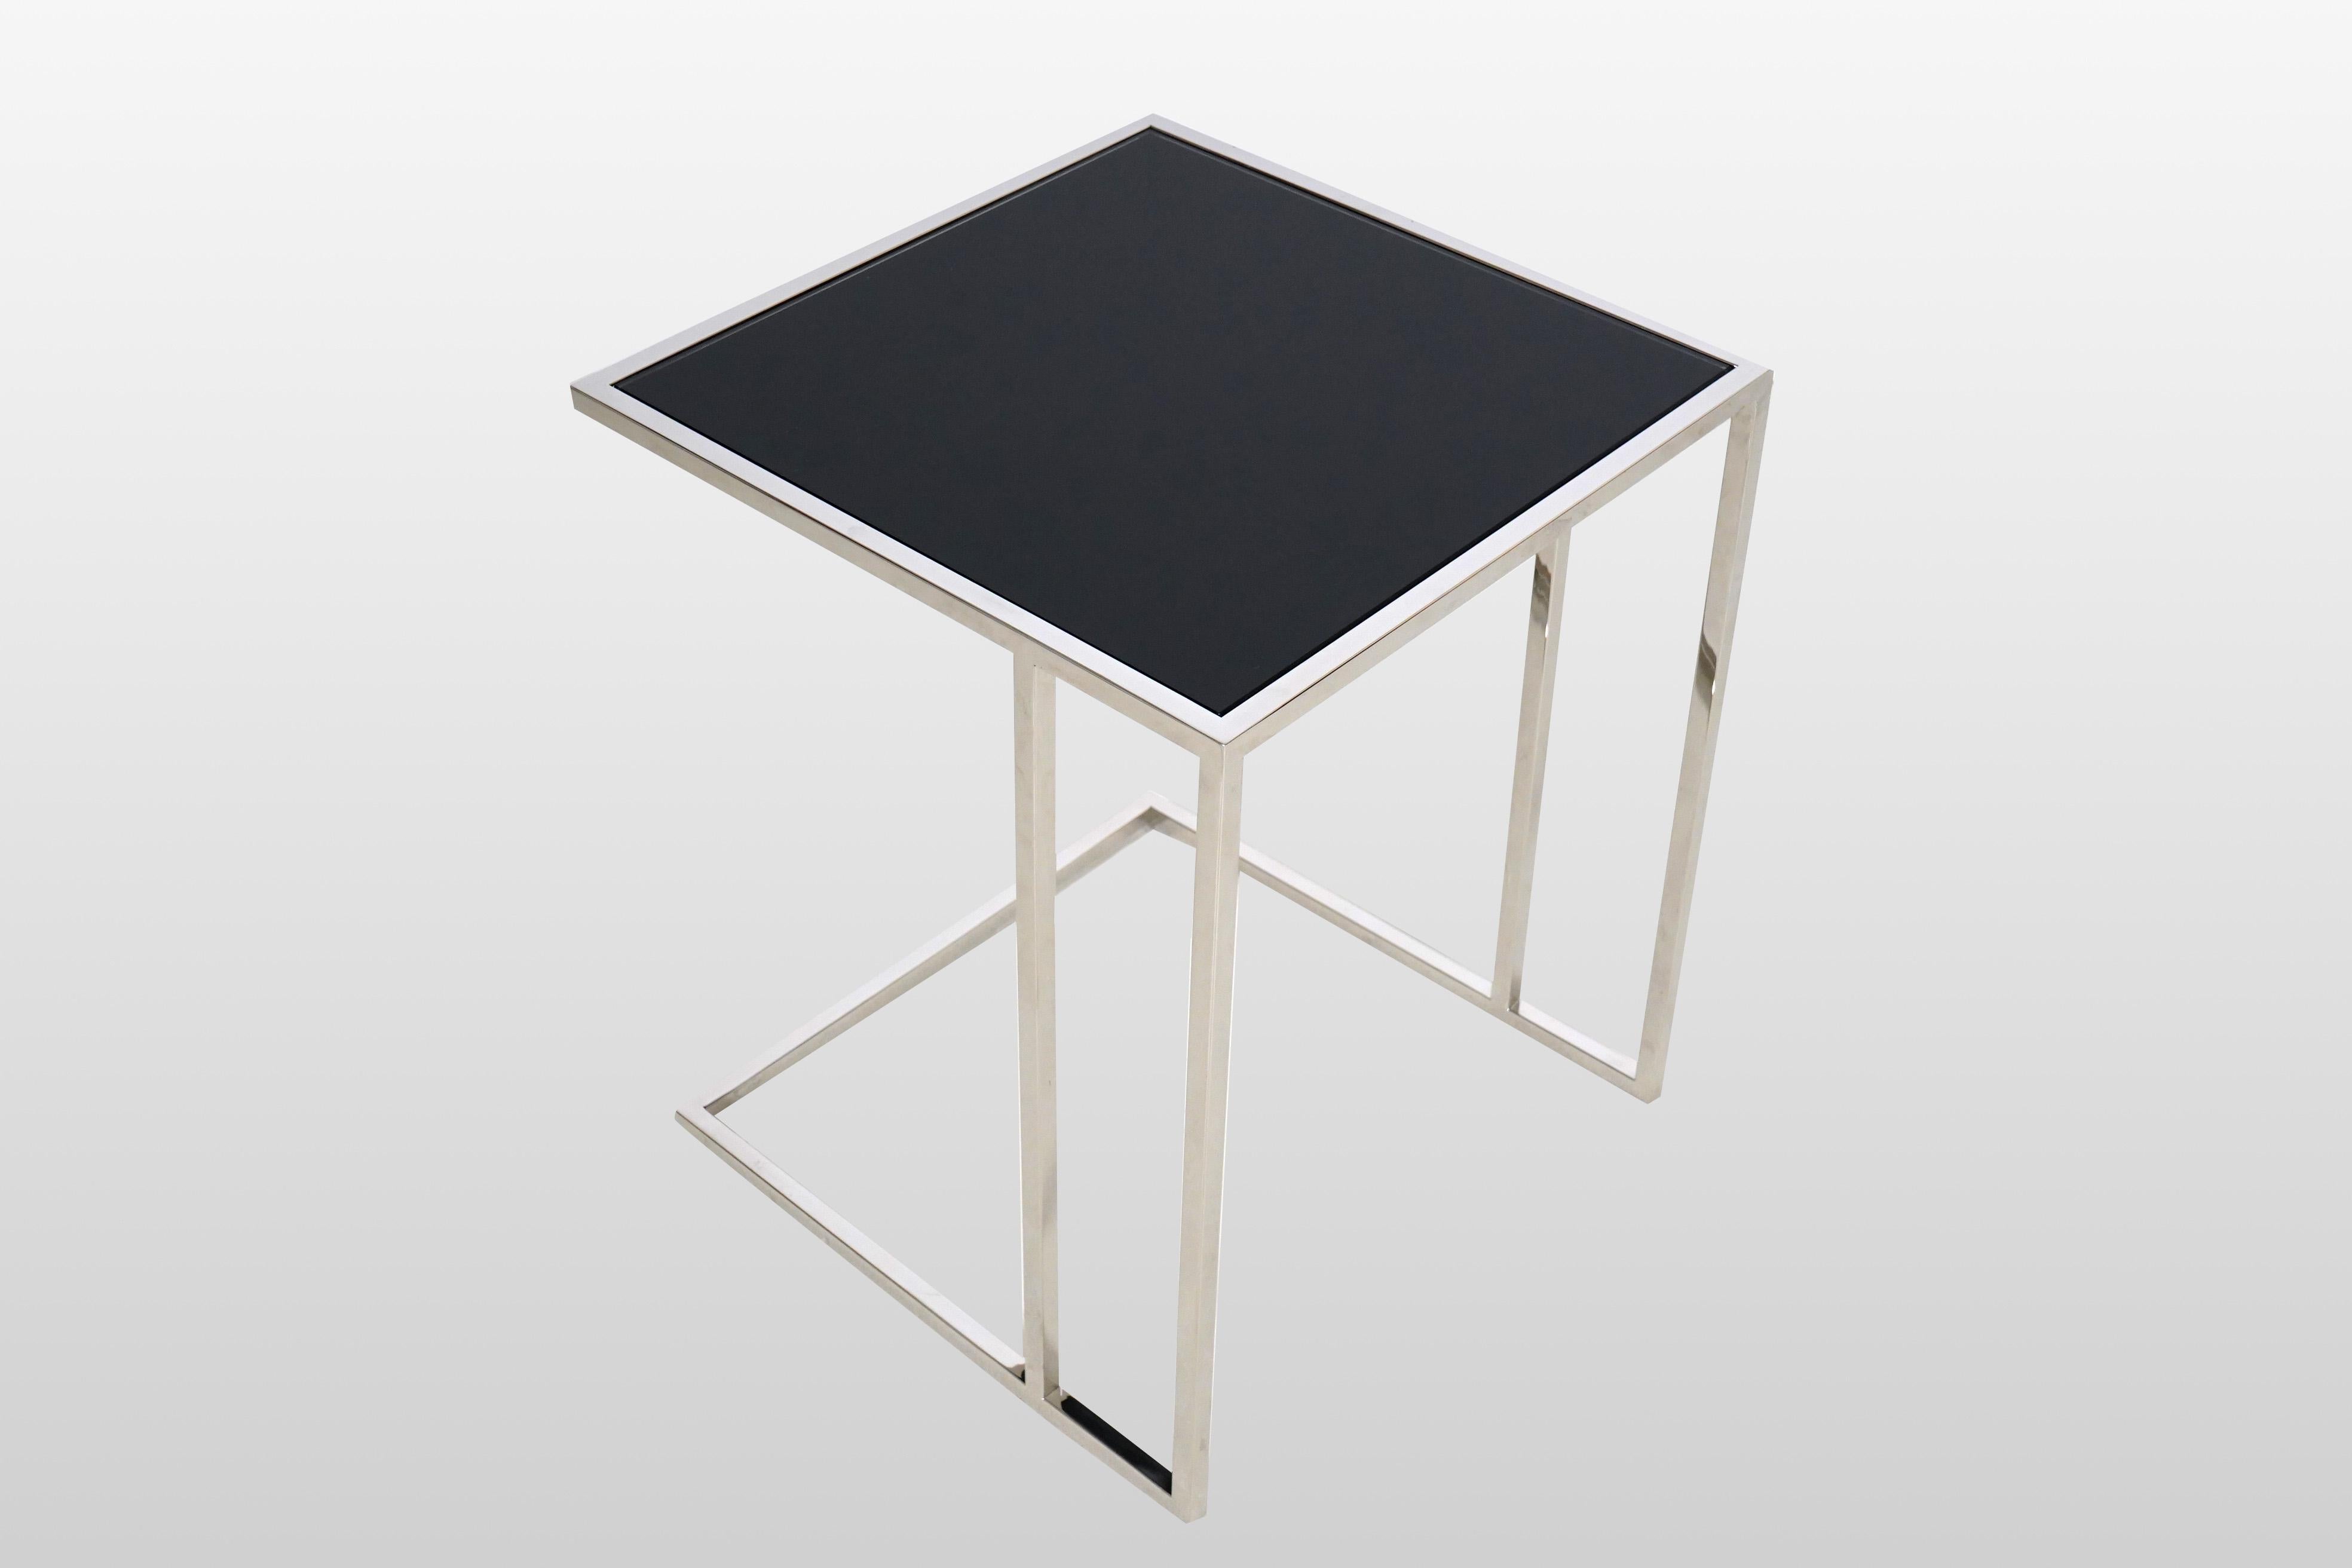 Cette table d'appoint très moderne et anguleuse s'inspire des designs italiens des années 1960. Le cadre en chrome poli est très fin et minimaliste et a été associé à un plateau en verre fumé. La pièce constitue une excellente table d'appoint et